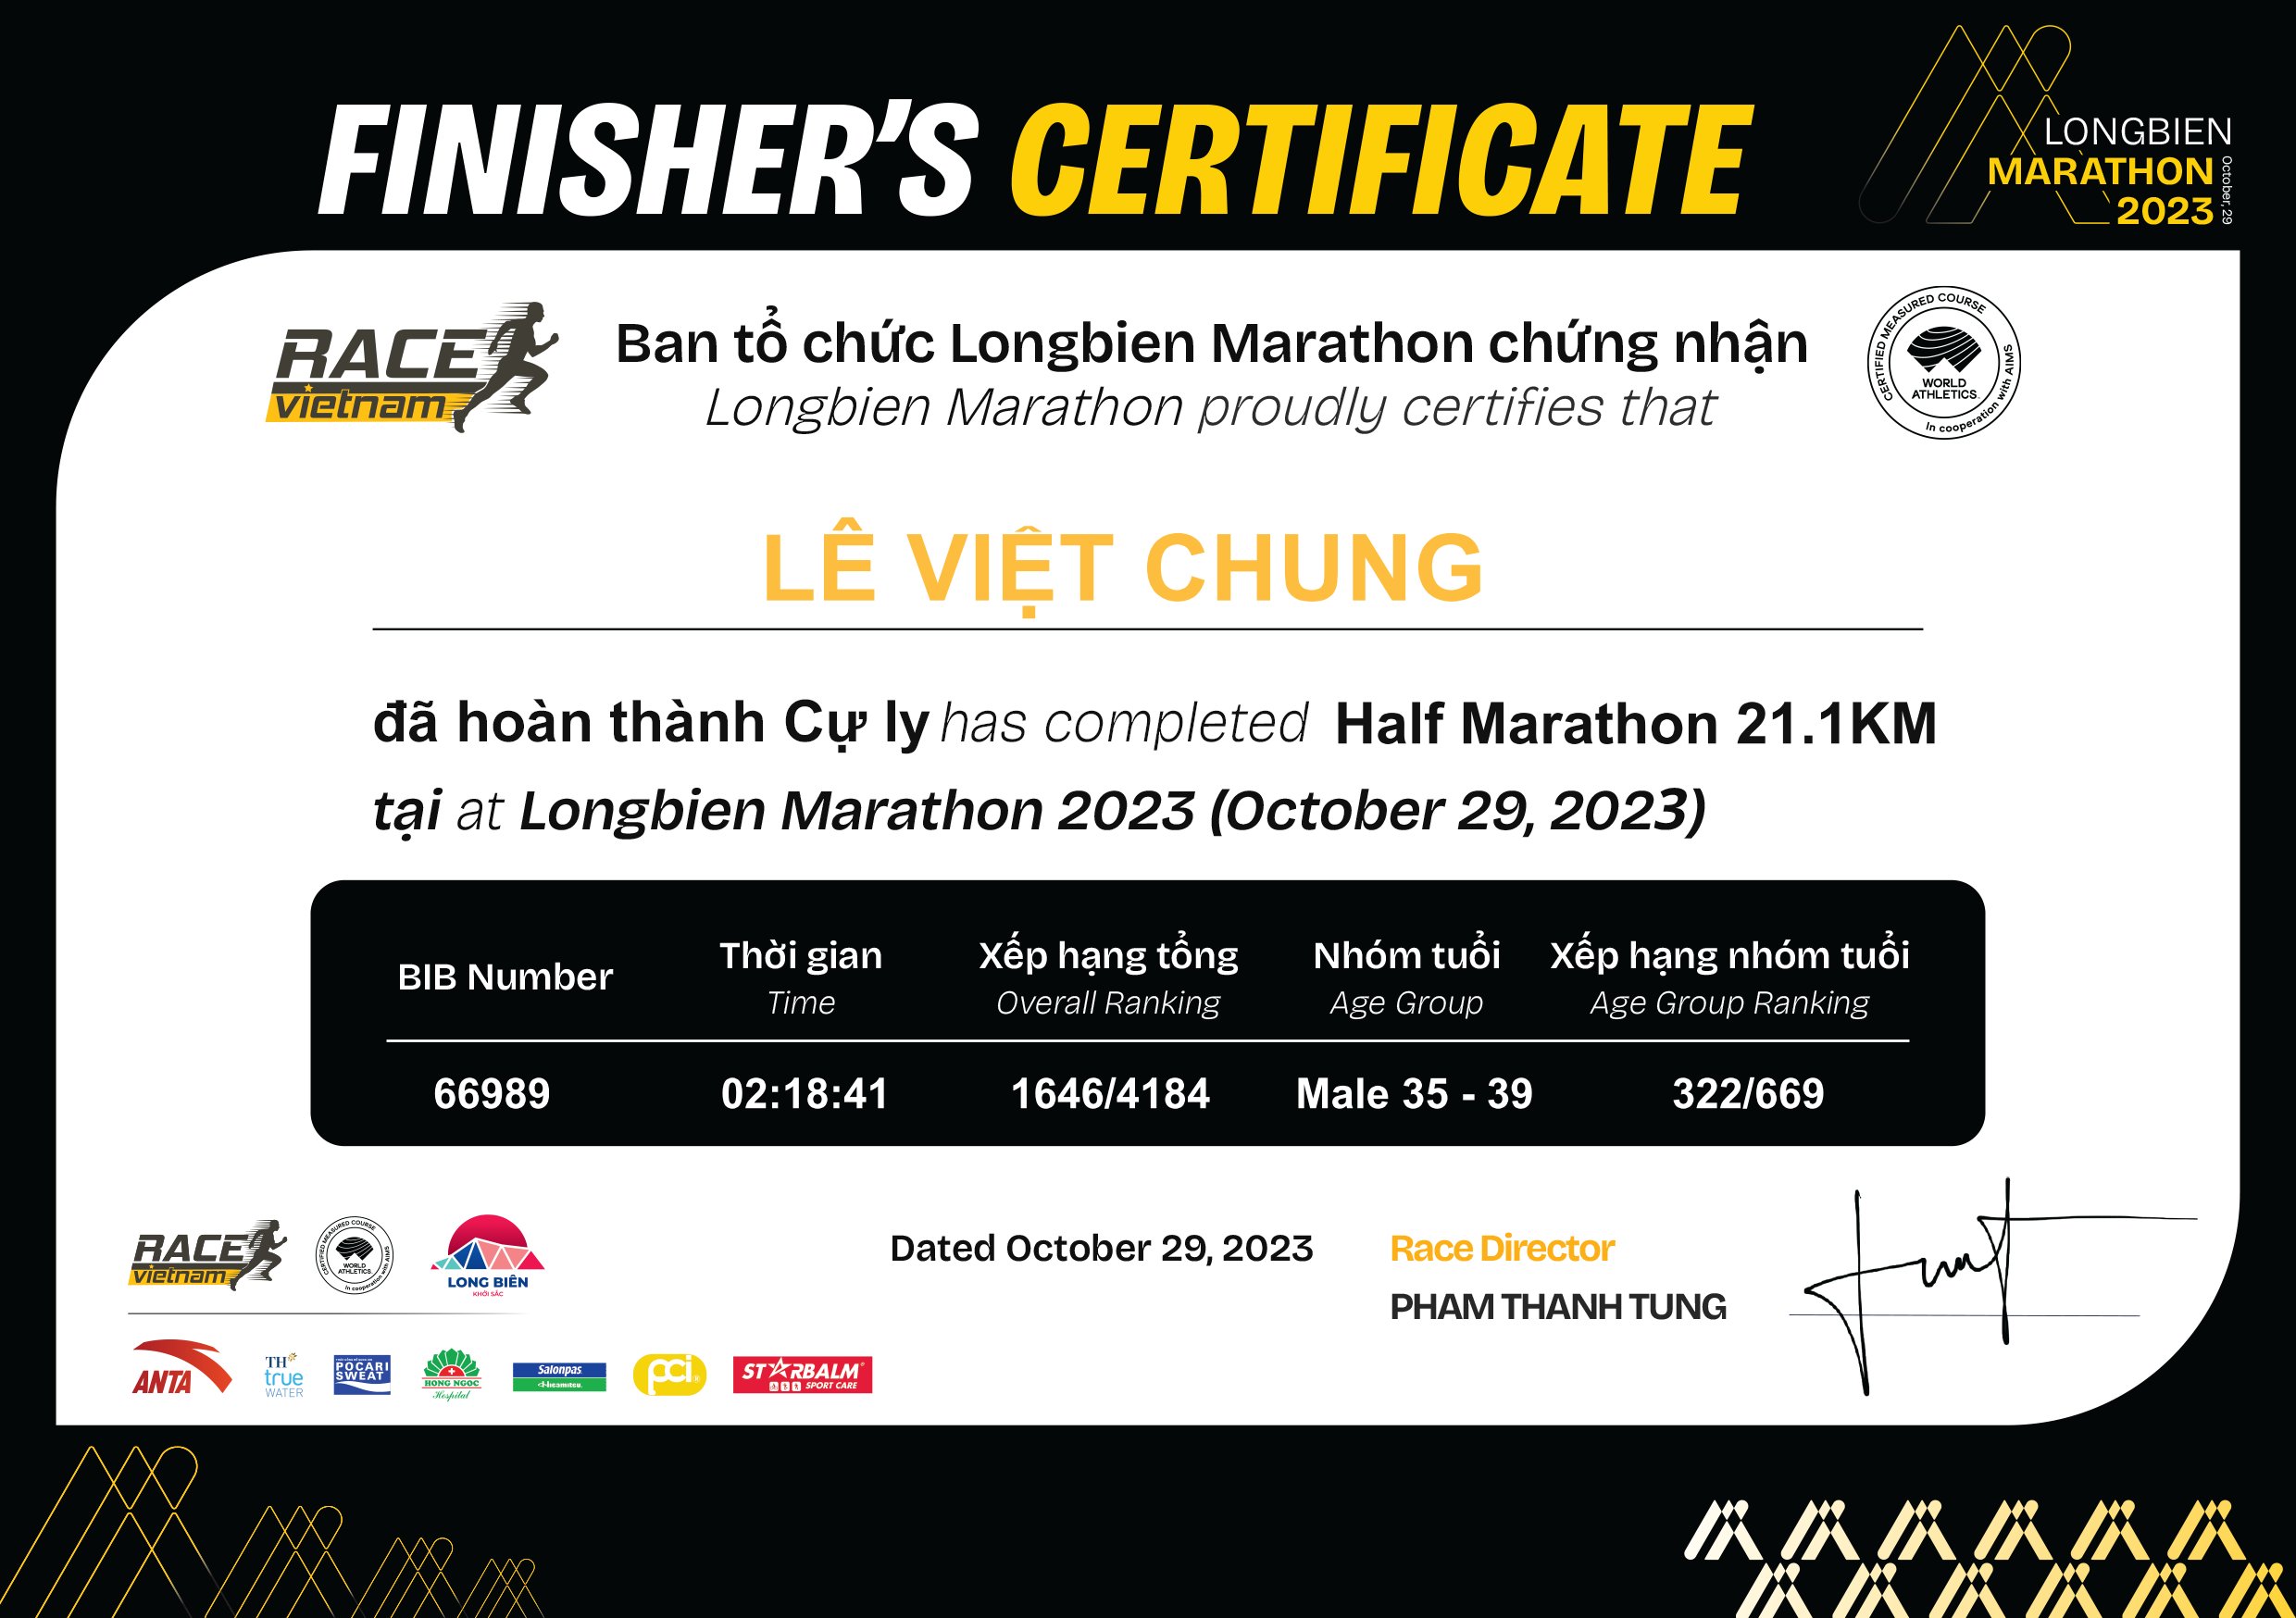 66989 - Lê Việt Chung